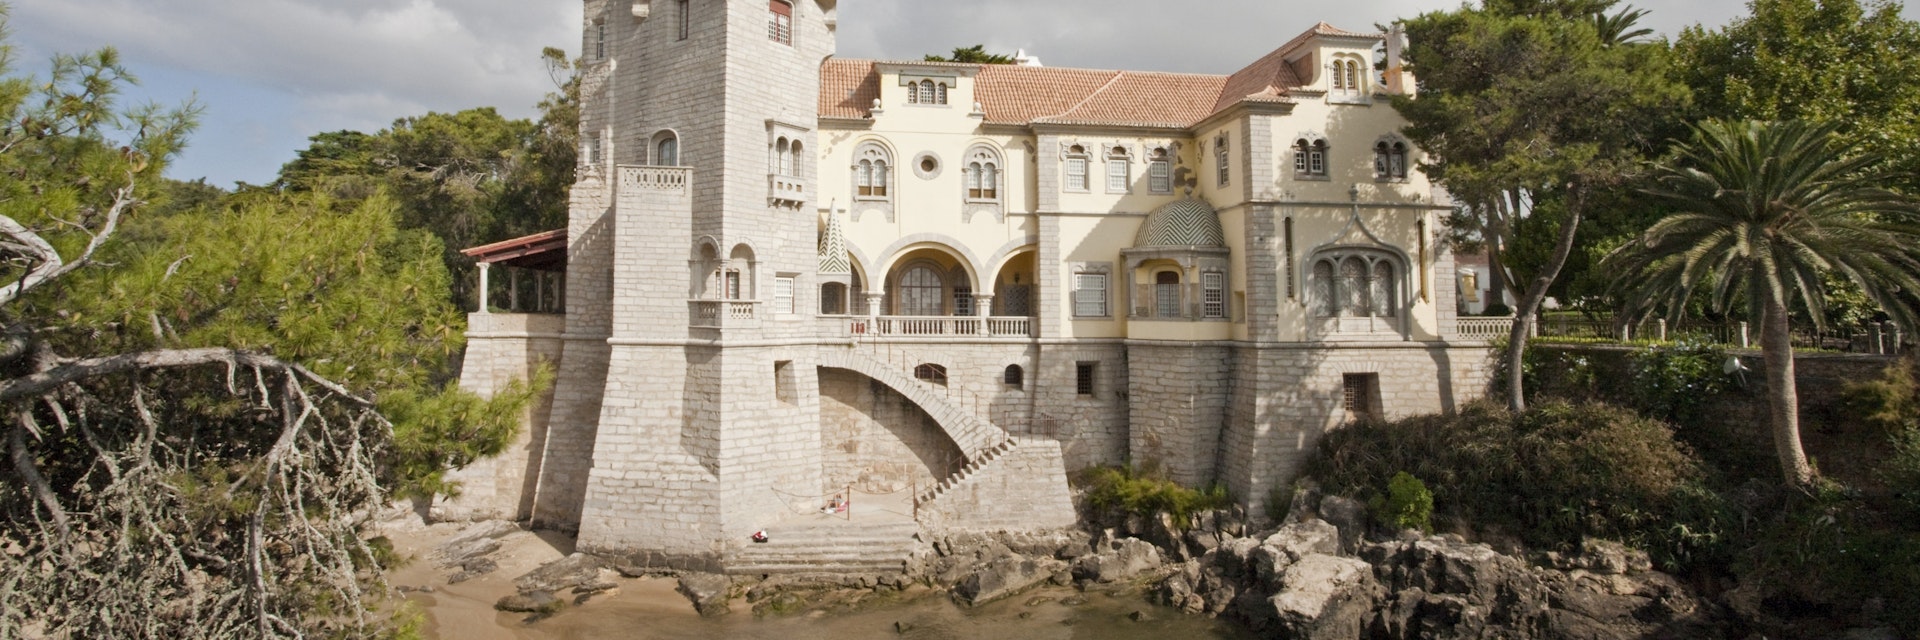 Portugal, Cascais, Conde Castro palace